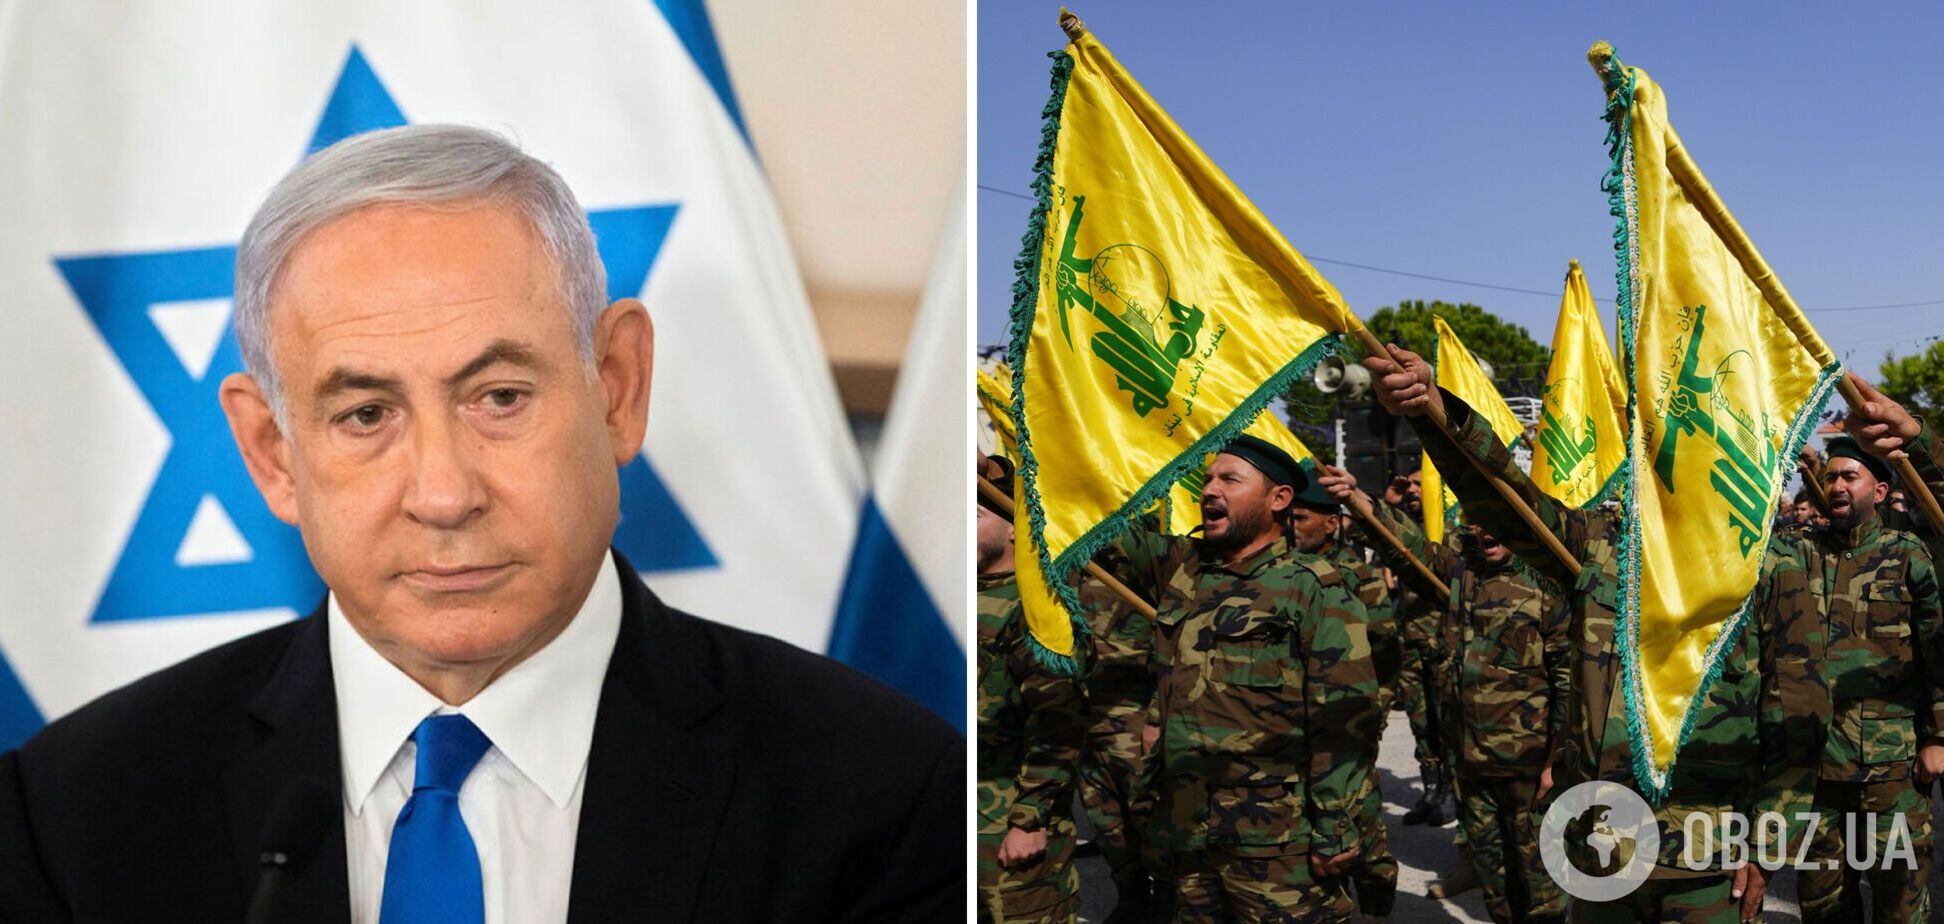 Якщо 'Хезболла' почне війну проти Ізраїлю, то Ліван буде знищено, – Нетаньягу